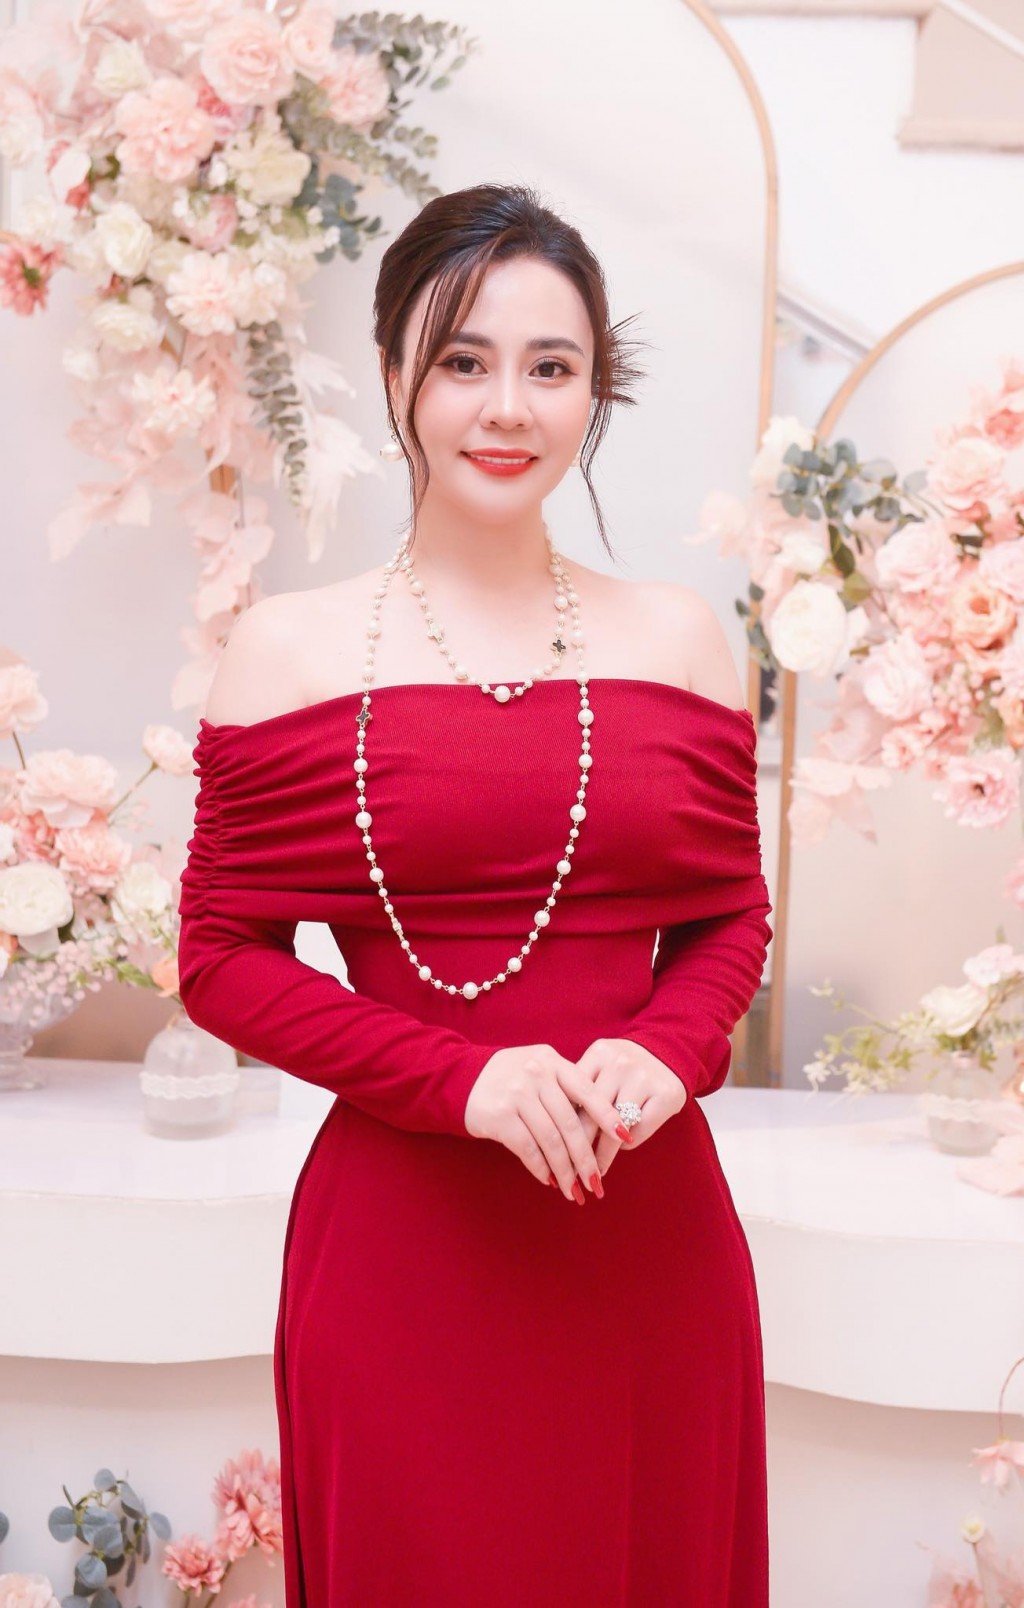 “Hoa hậu 2 nhiệm kỳ” Phan Kim Oanh hội ngội ca sĩ Minh Quân